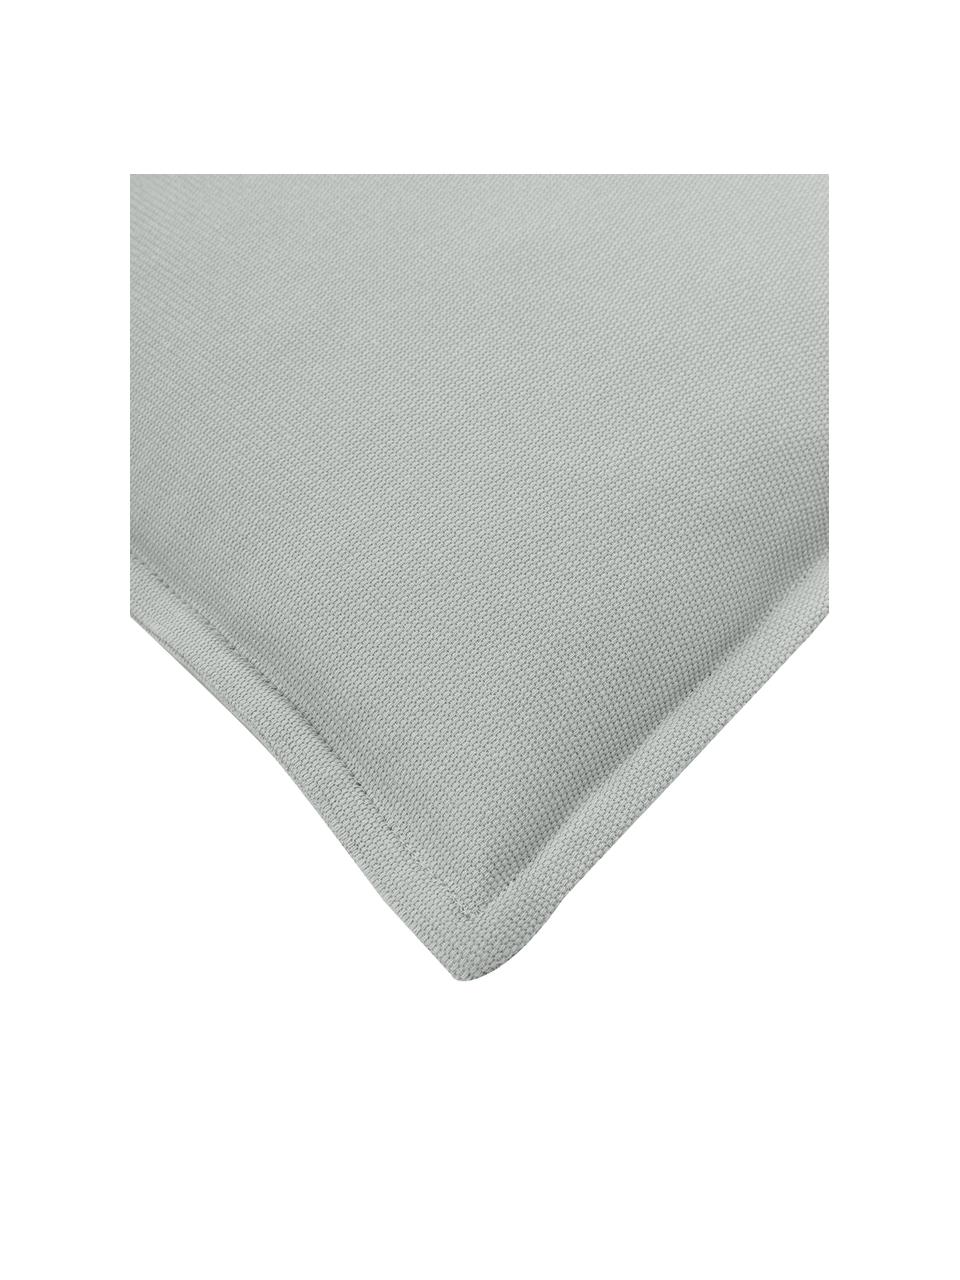 Federa arredo con bordino in cotone grigio chiaro Mads, 100% cotone, Grigio chiaro, Larg. 40 x Lung. 40 cm